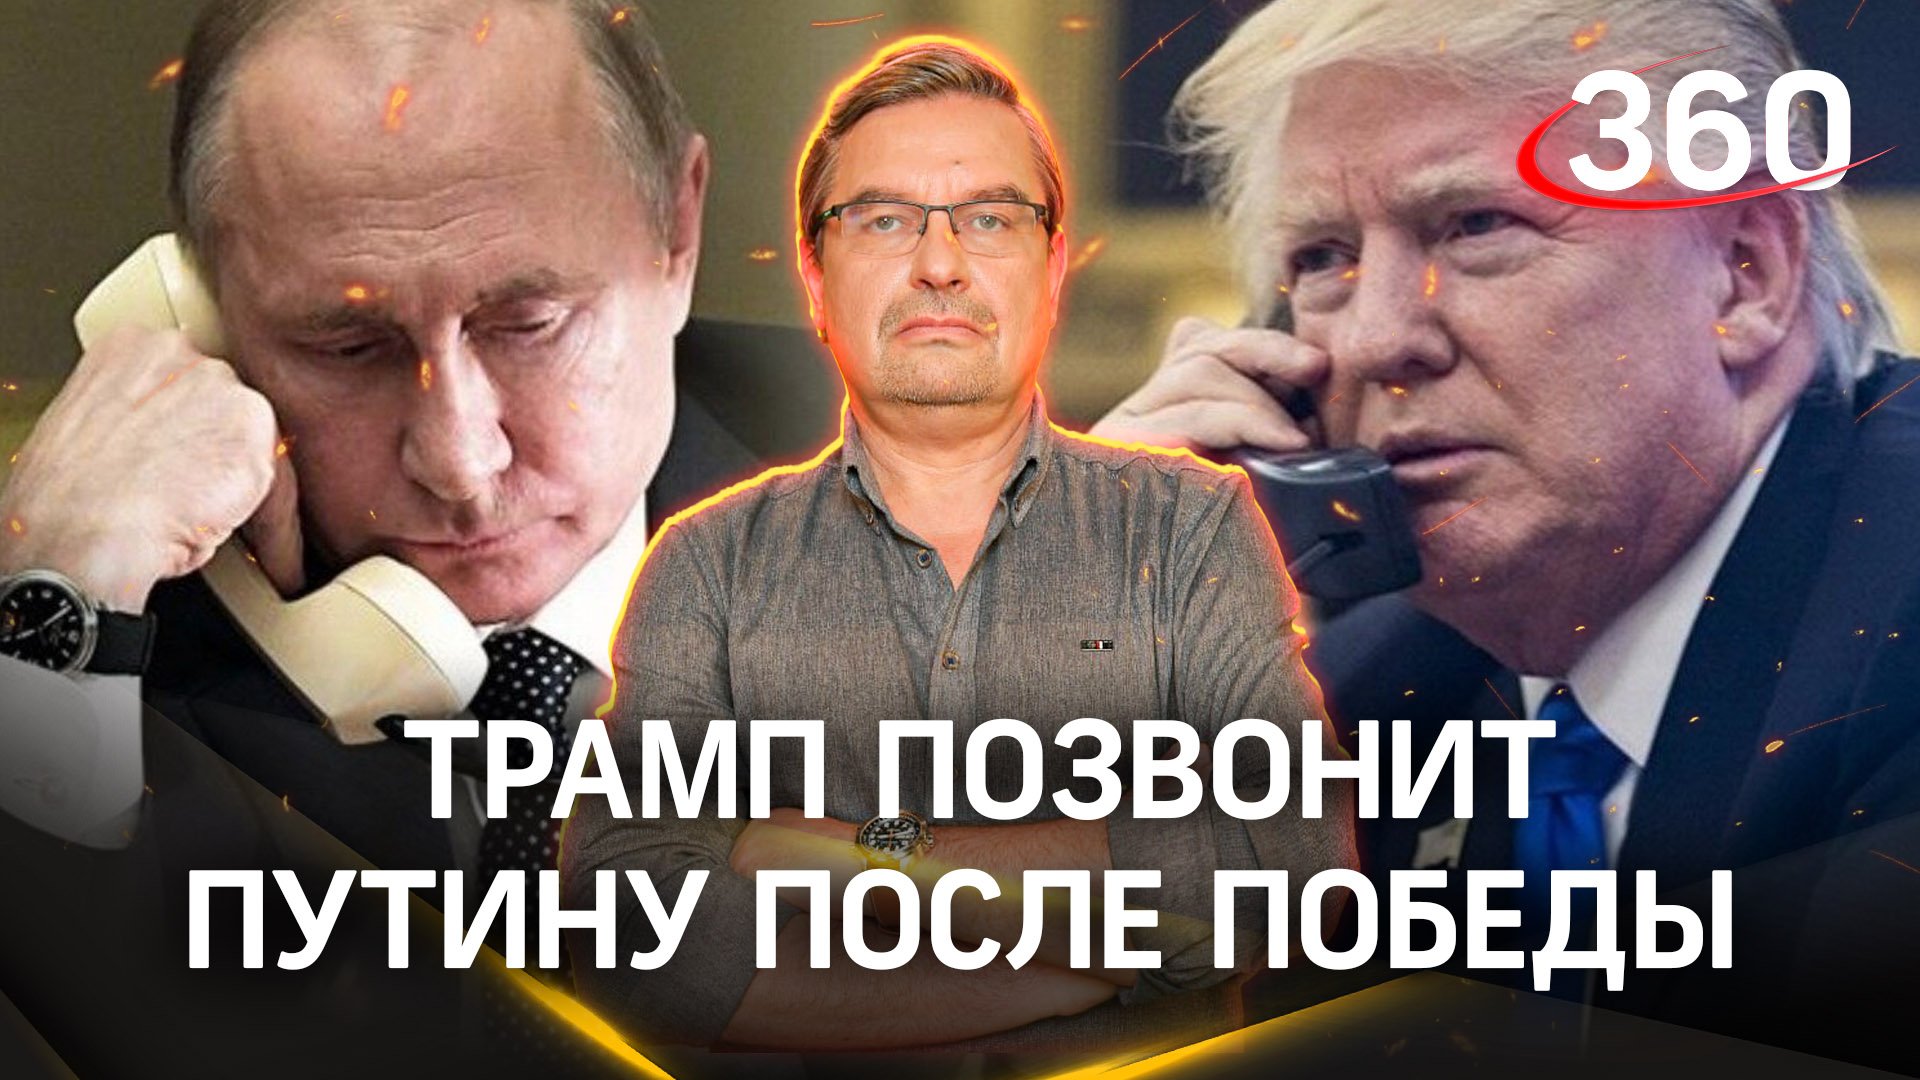 Михаил Онуфриенко: «С Путиным этот номер не проходит». Звонок Трампа Путину